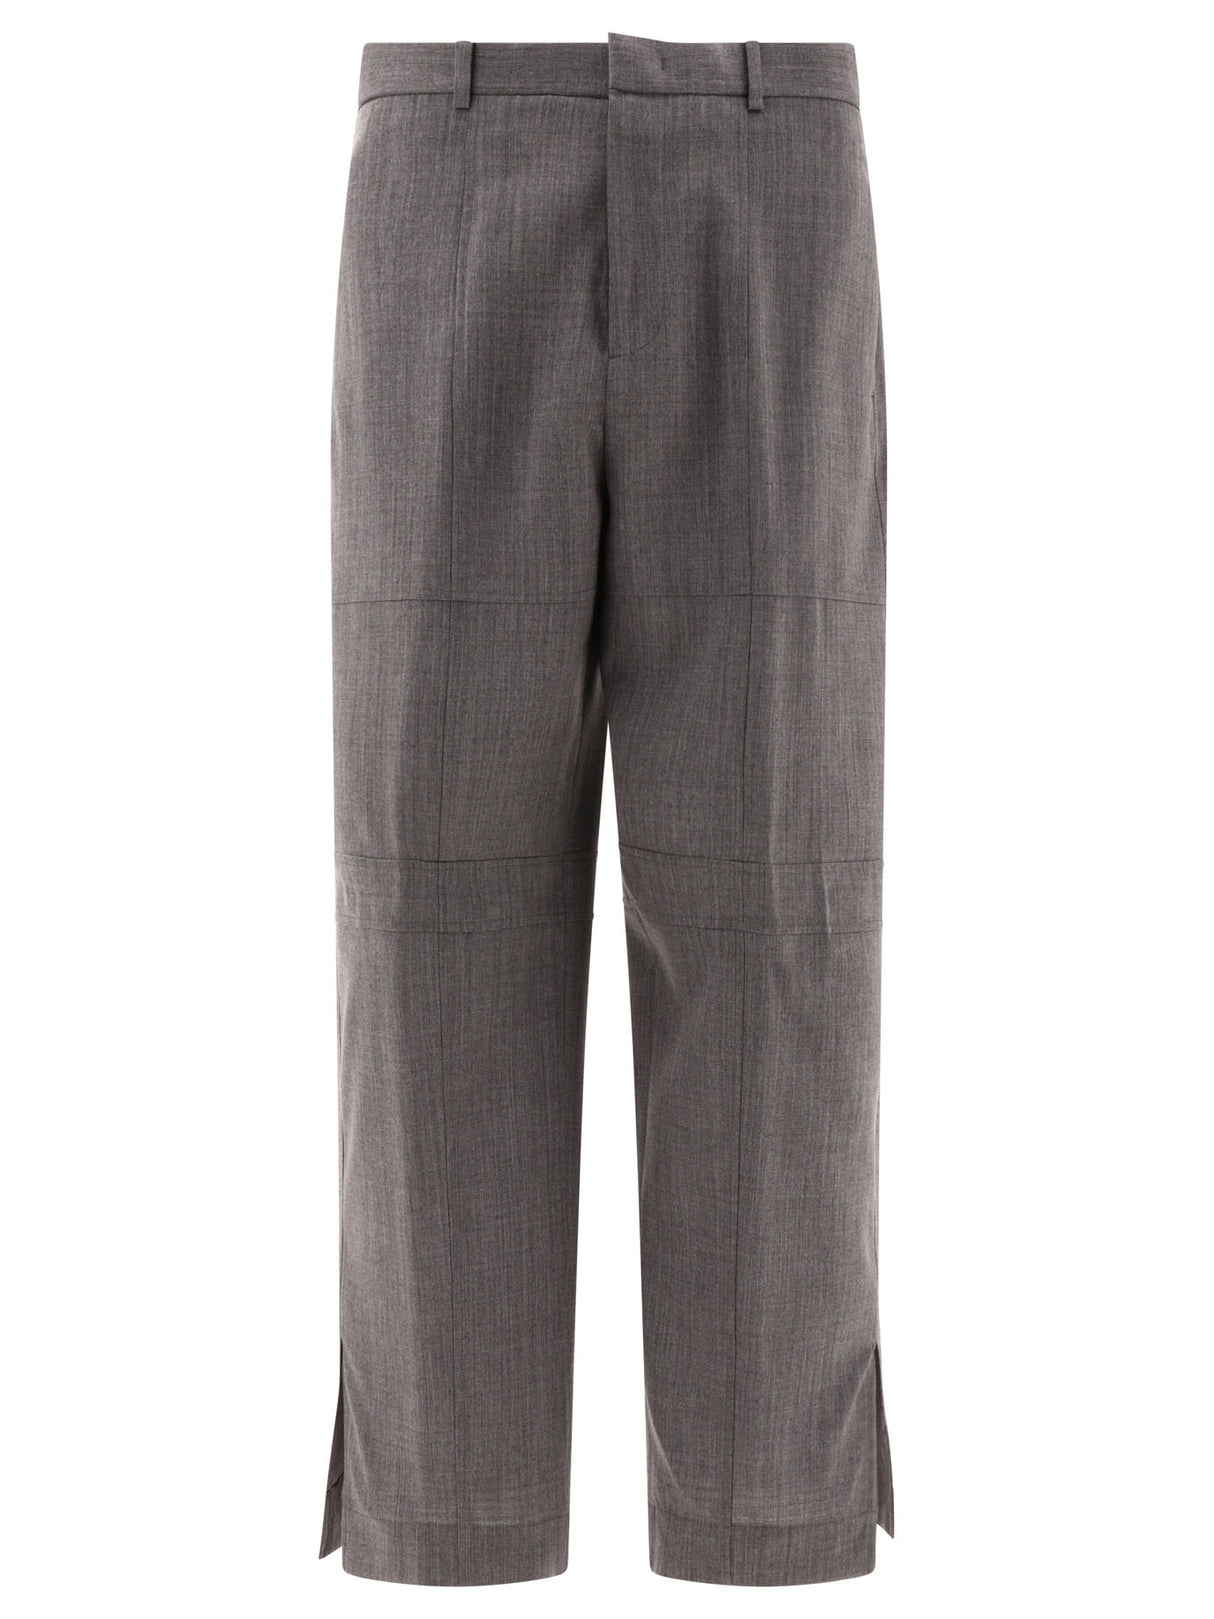 JIL SANDER Stylish Gray Wool Trousers for Men in FW24 Season